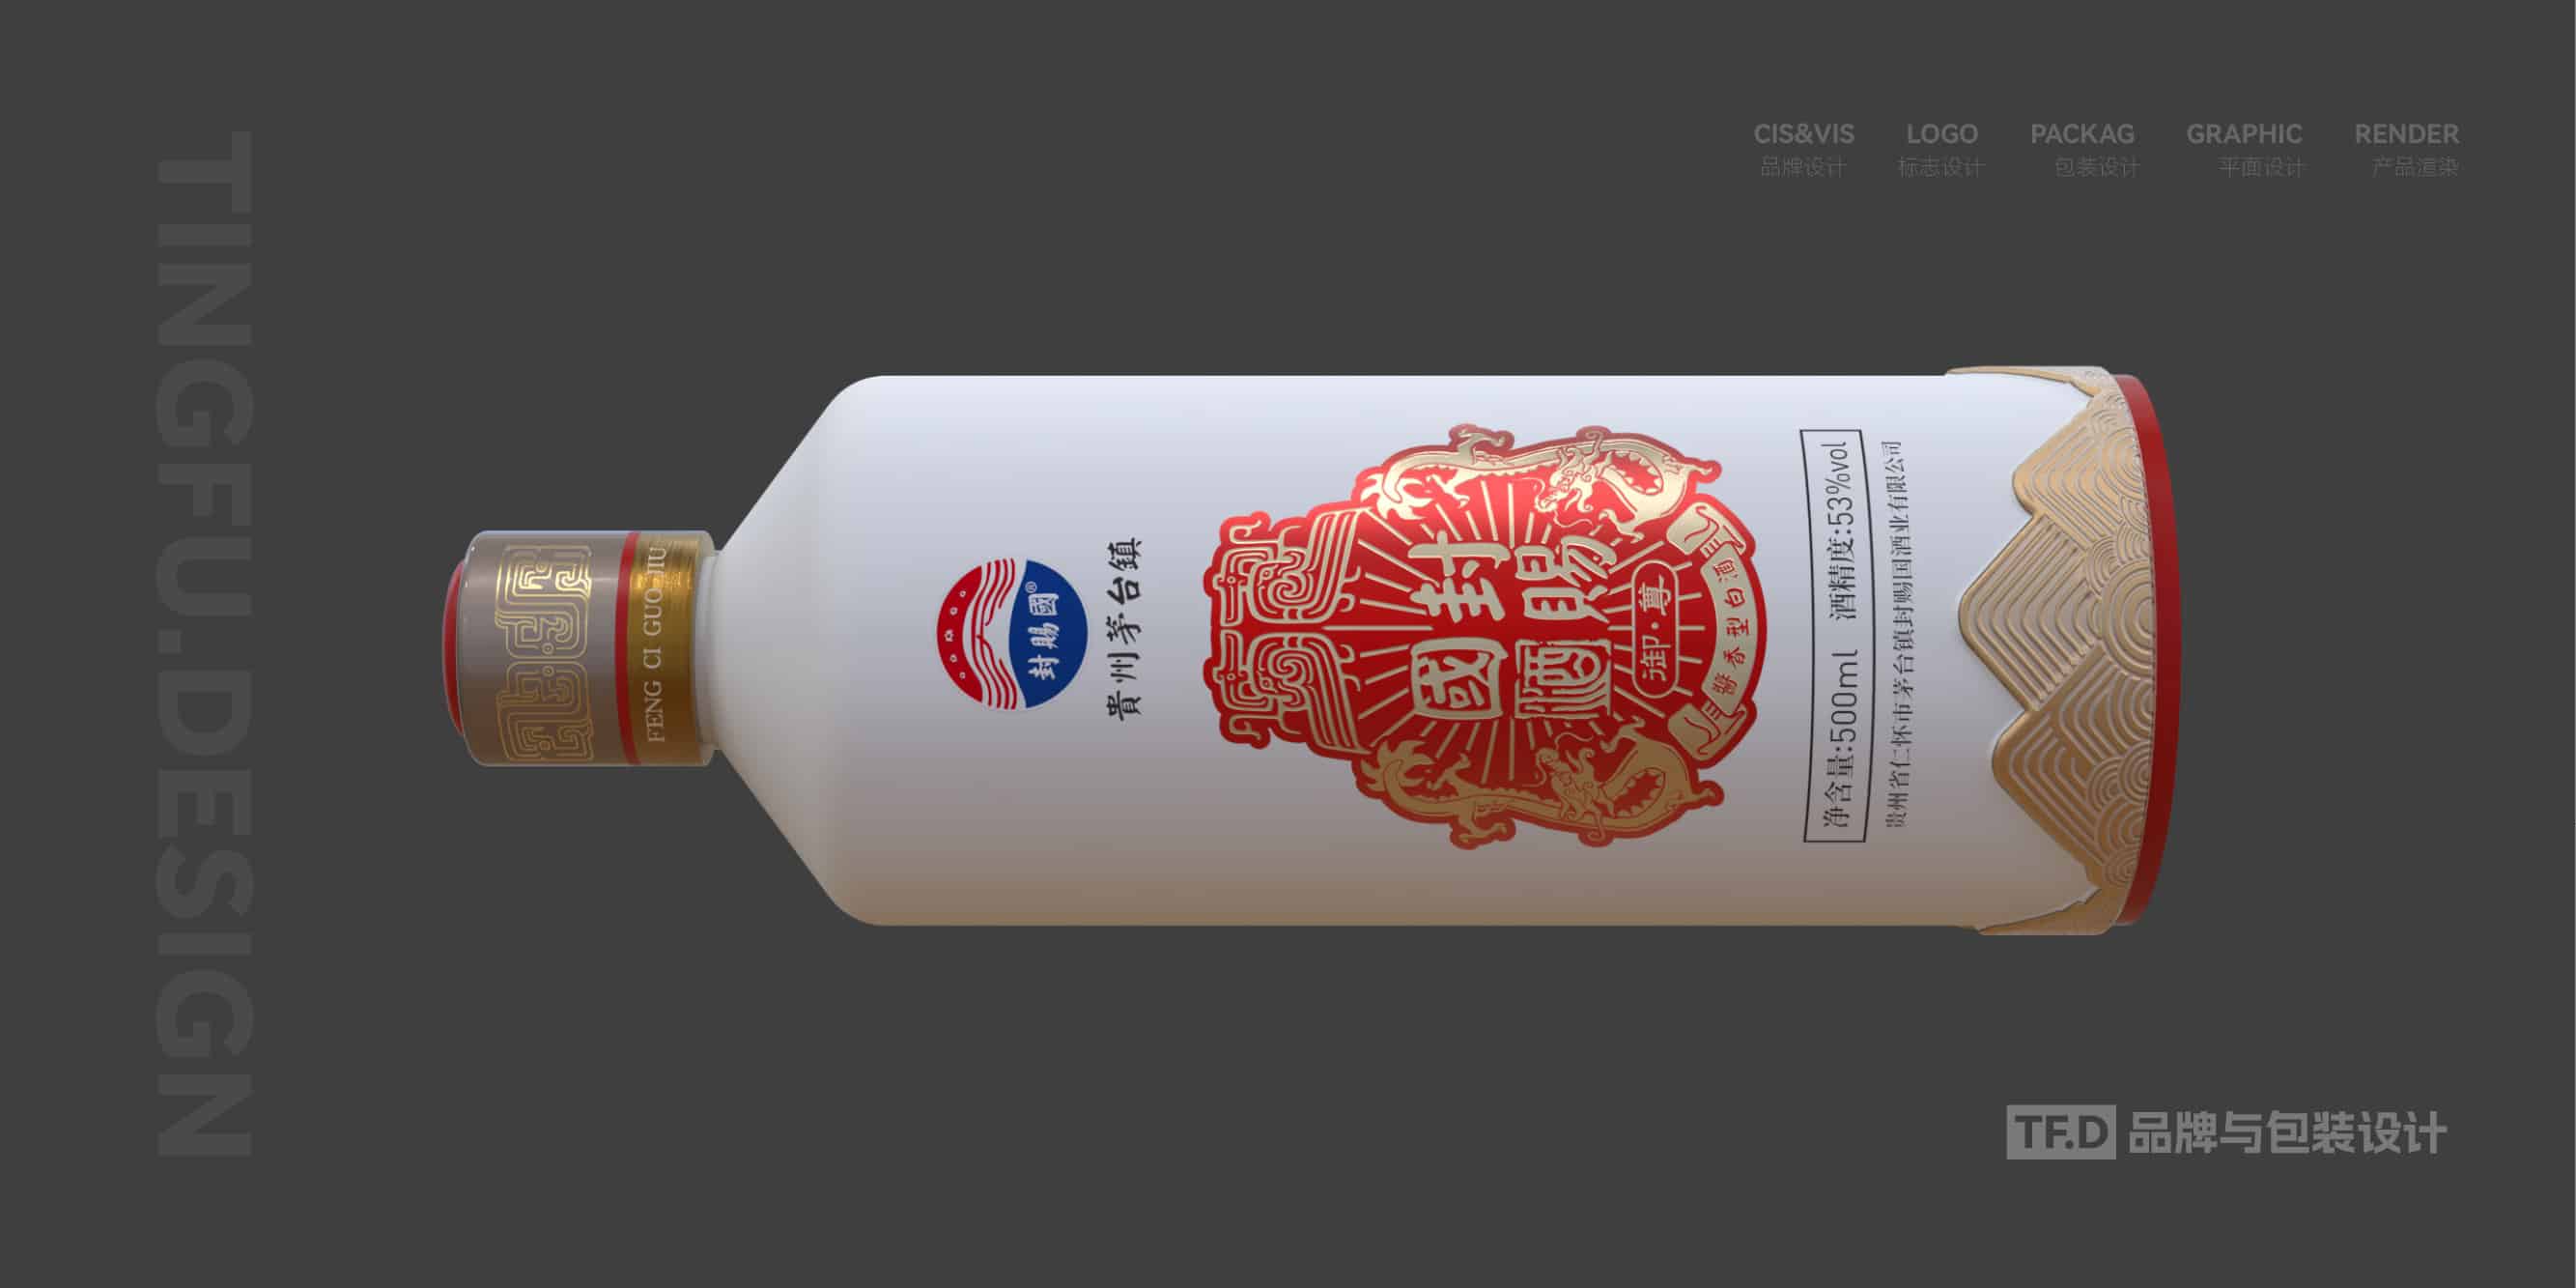 TFD品牌与包装设计-部分酒包装设计案例16-tuya.jpg